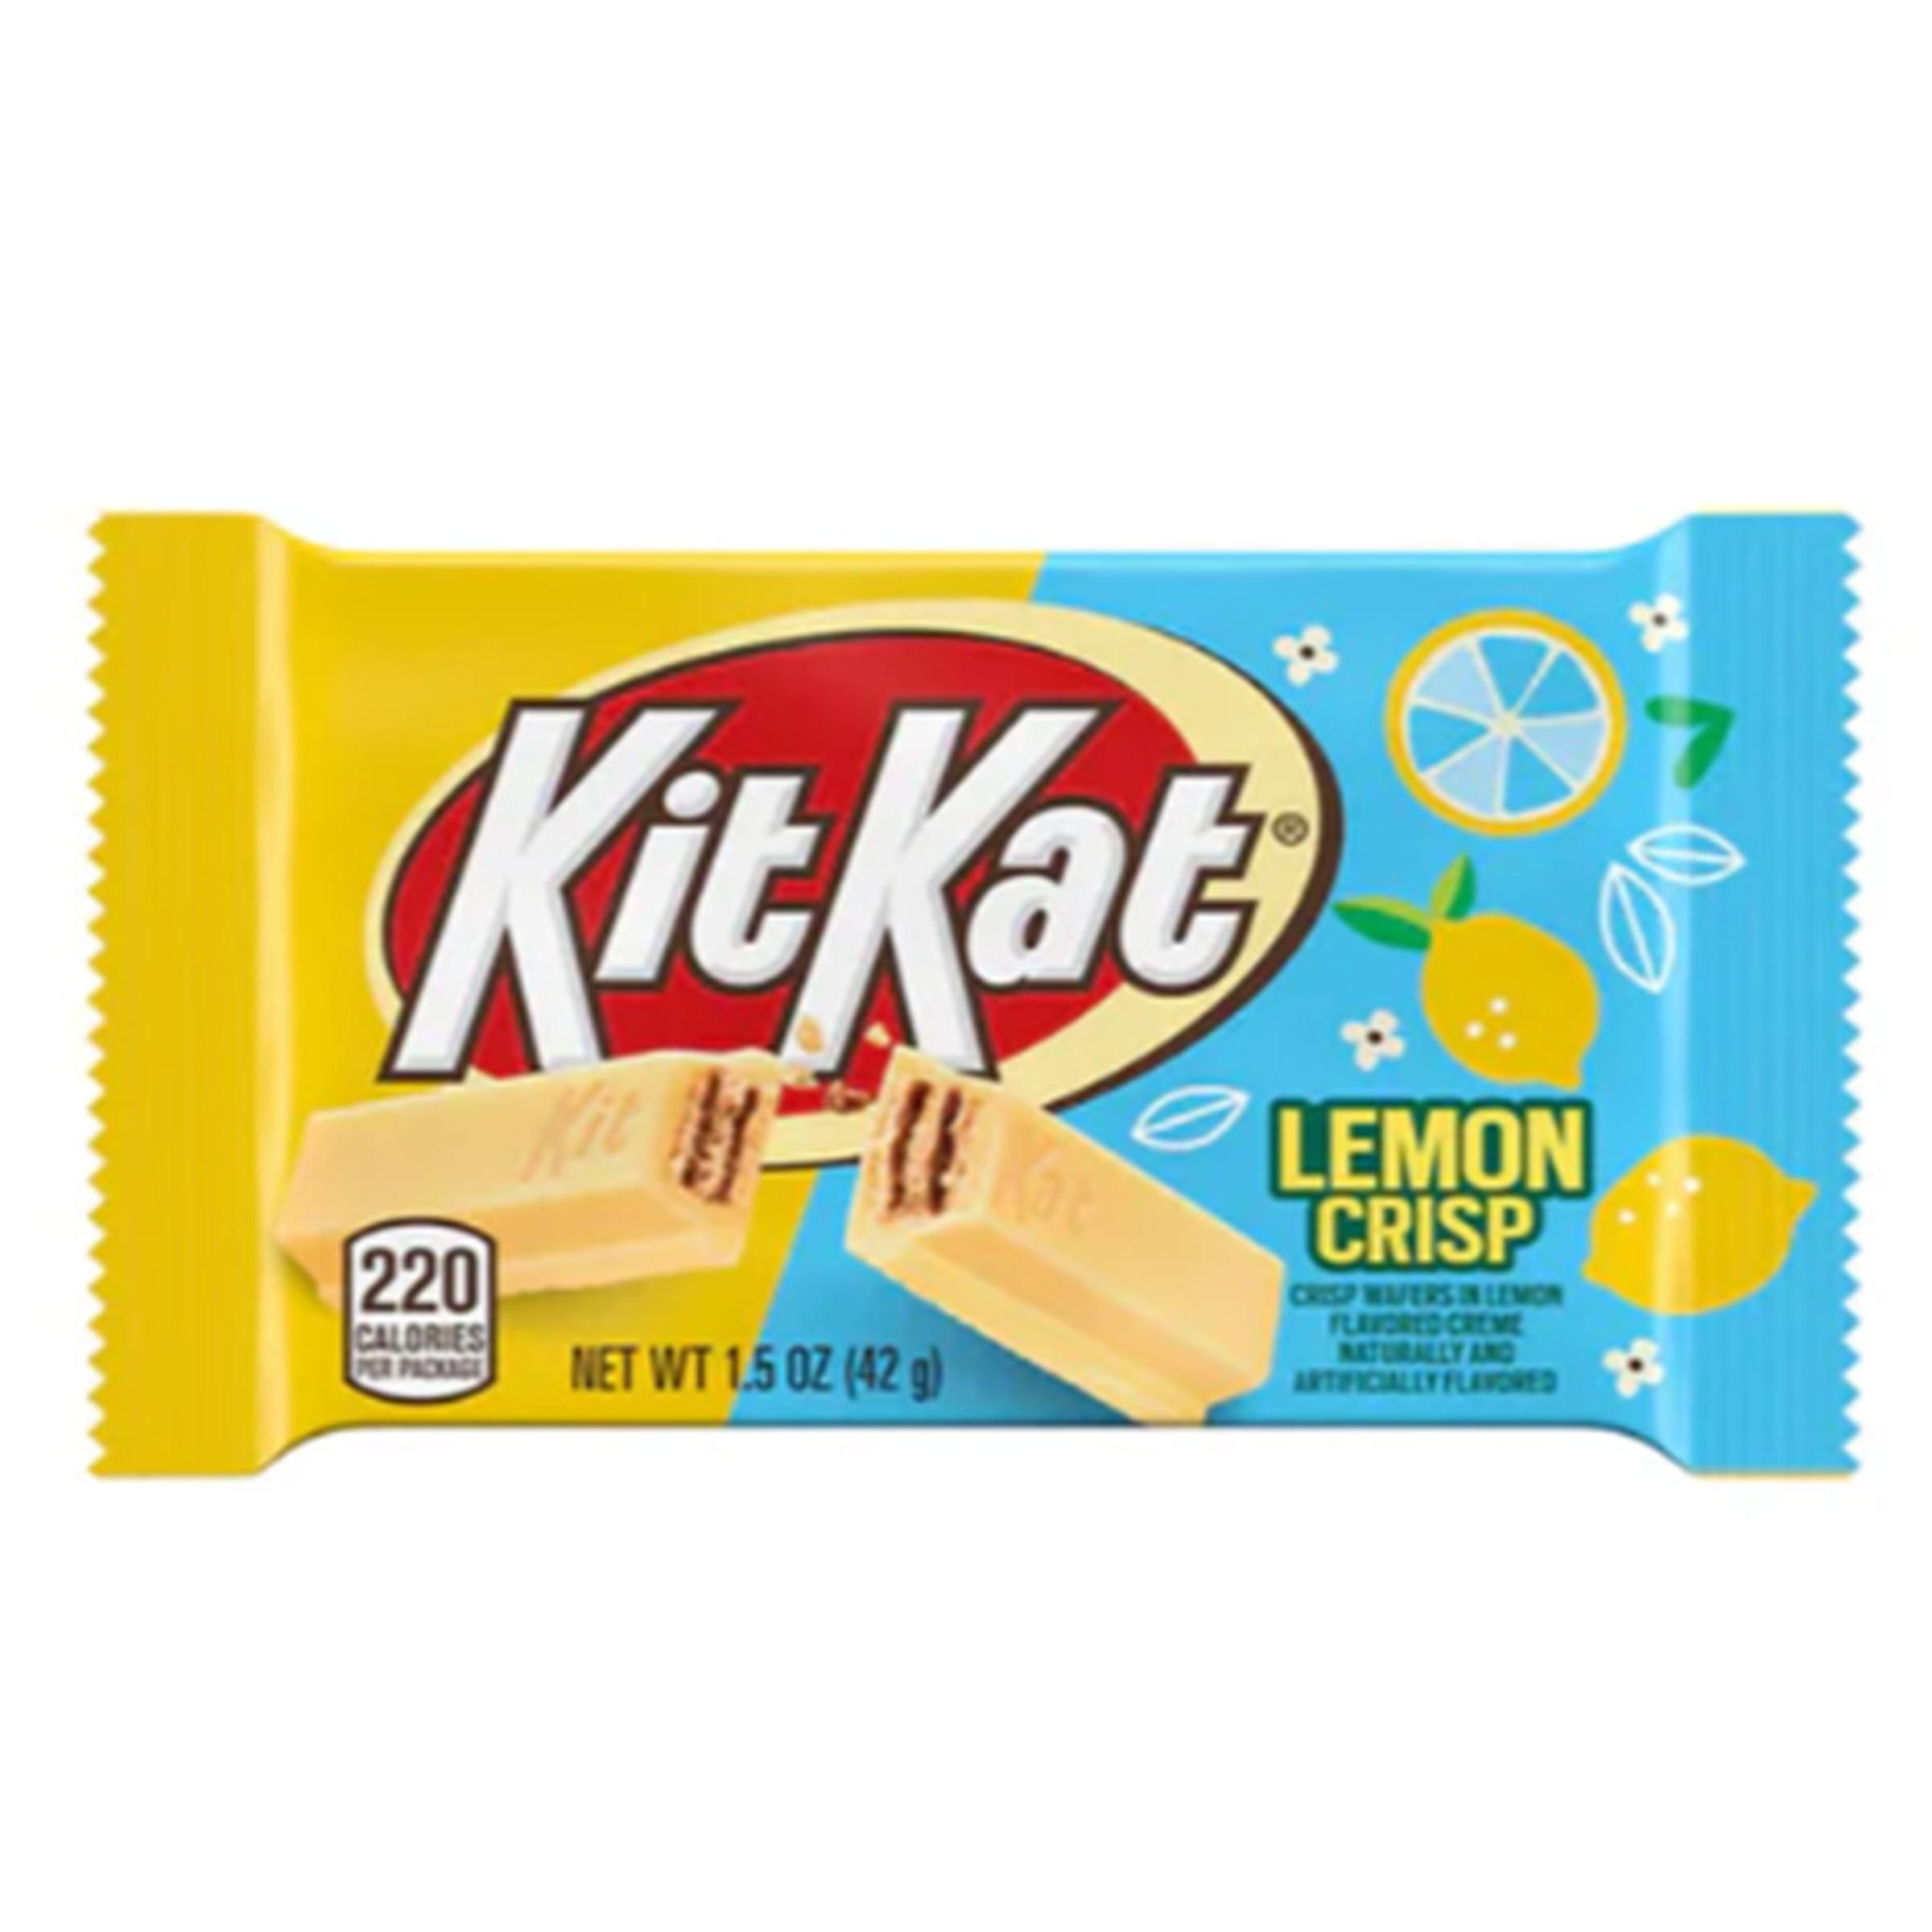 Kit Kat - Lemon Crisp